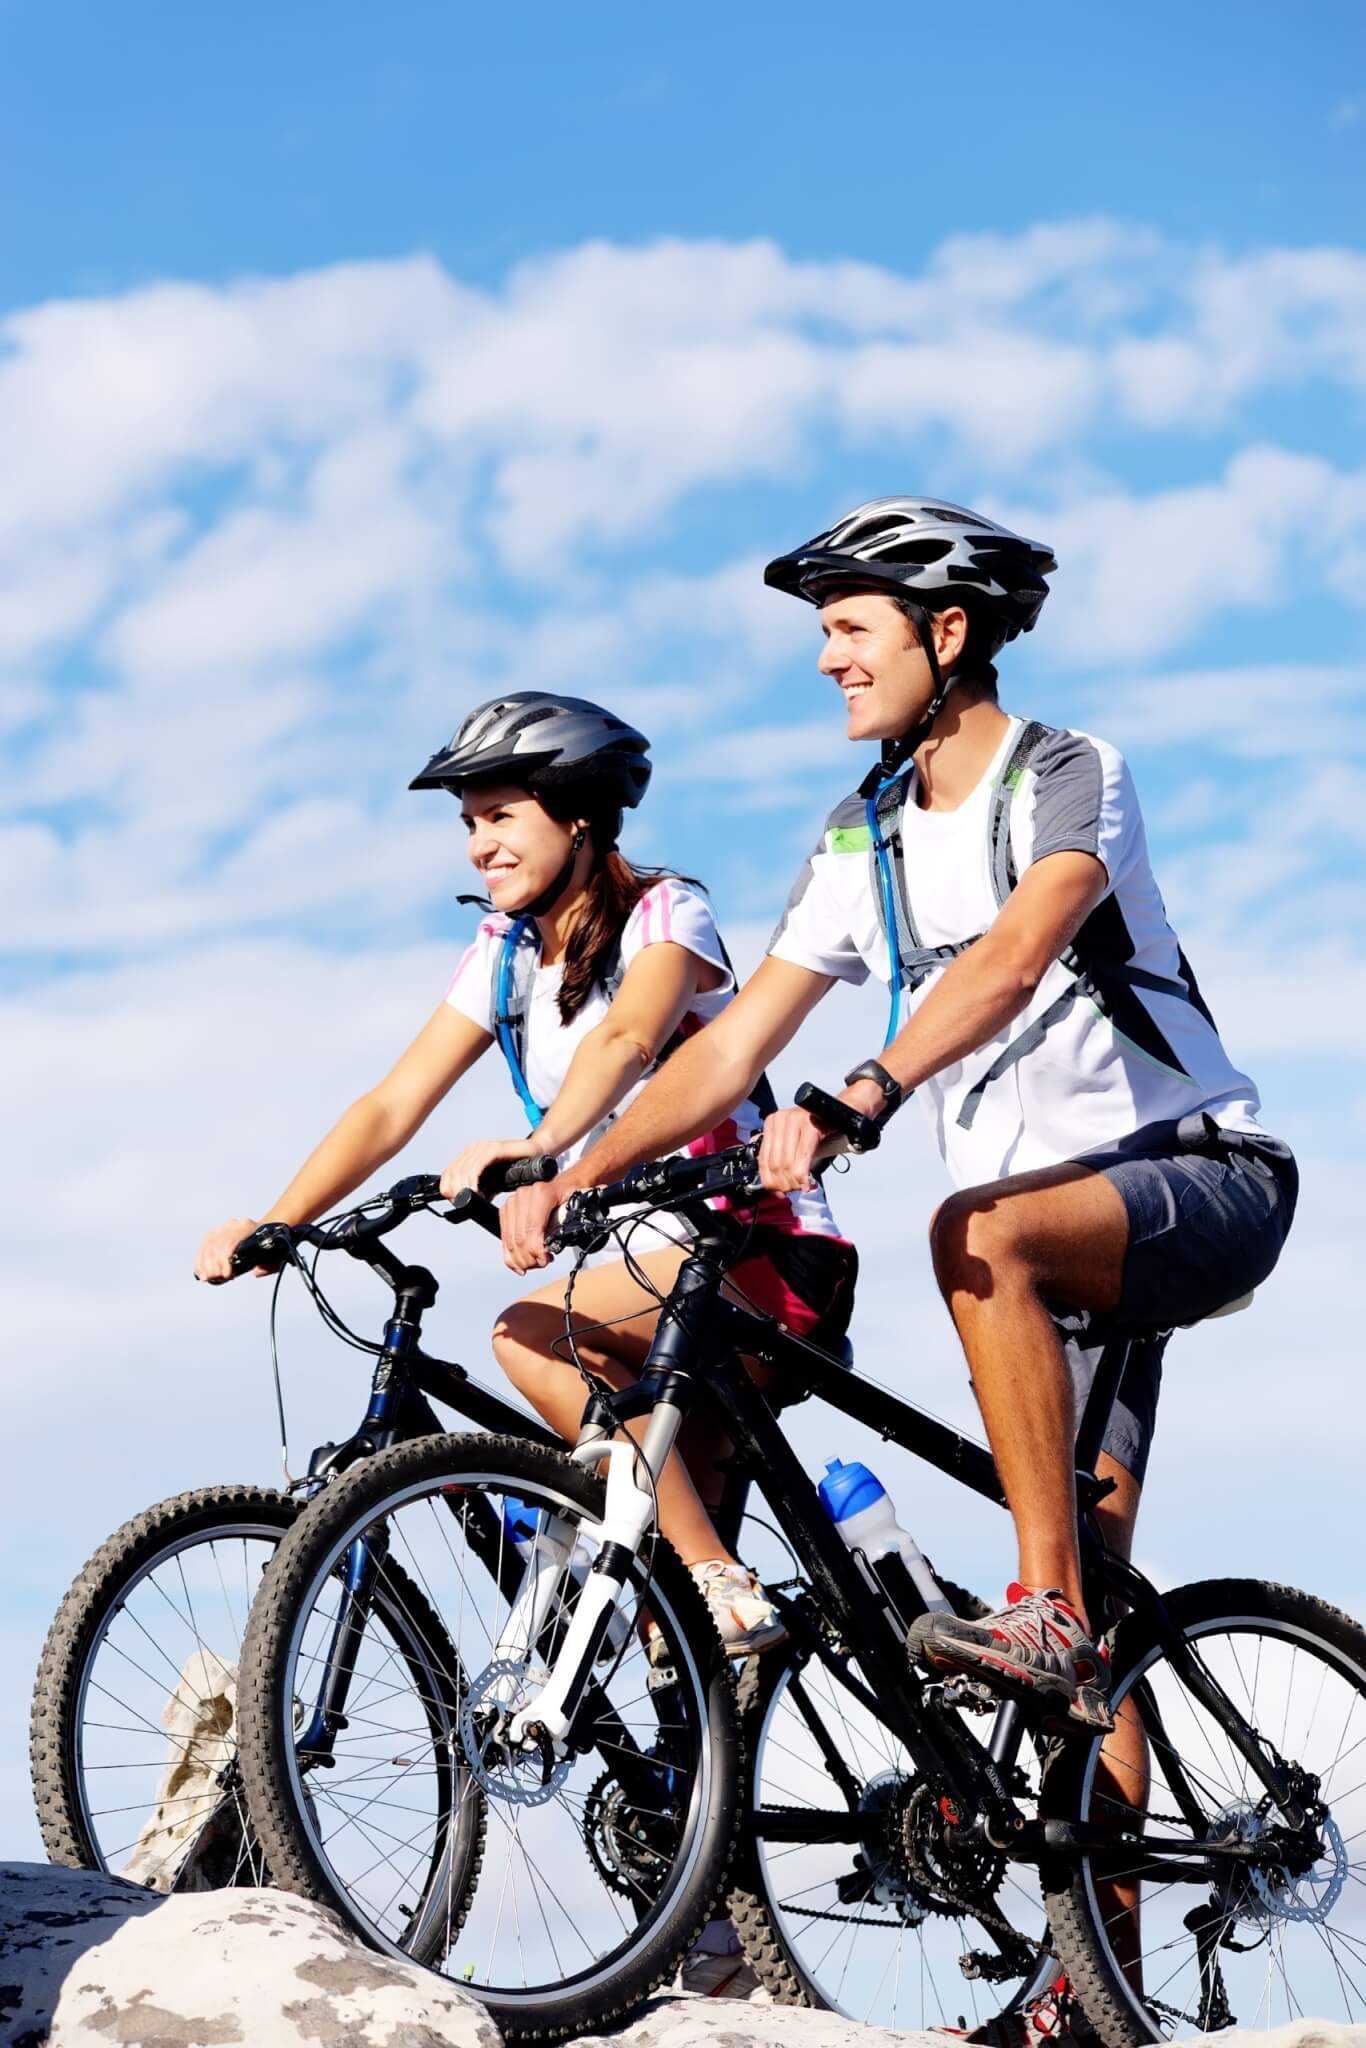 Andar de bicicleta não é apenas uma atividade prazerosa, mas também oferece uma variedade de benefícios para a saúde física e mental, além de ser uma escolha sustentável. A seguir, confira motivos para incluir a prática no seu dia a dia! Reprodução: EdiCase